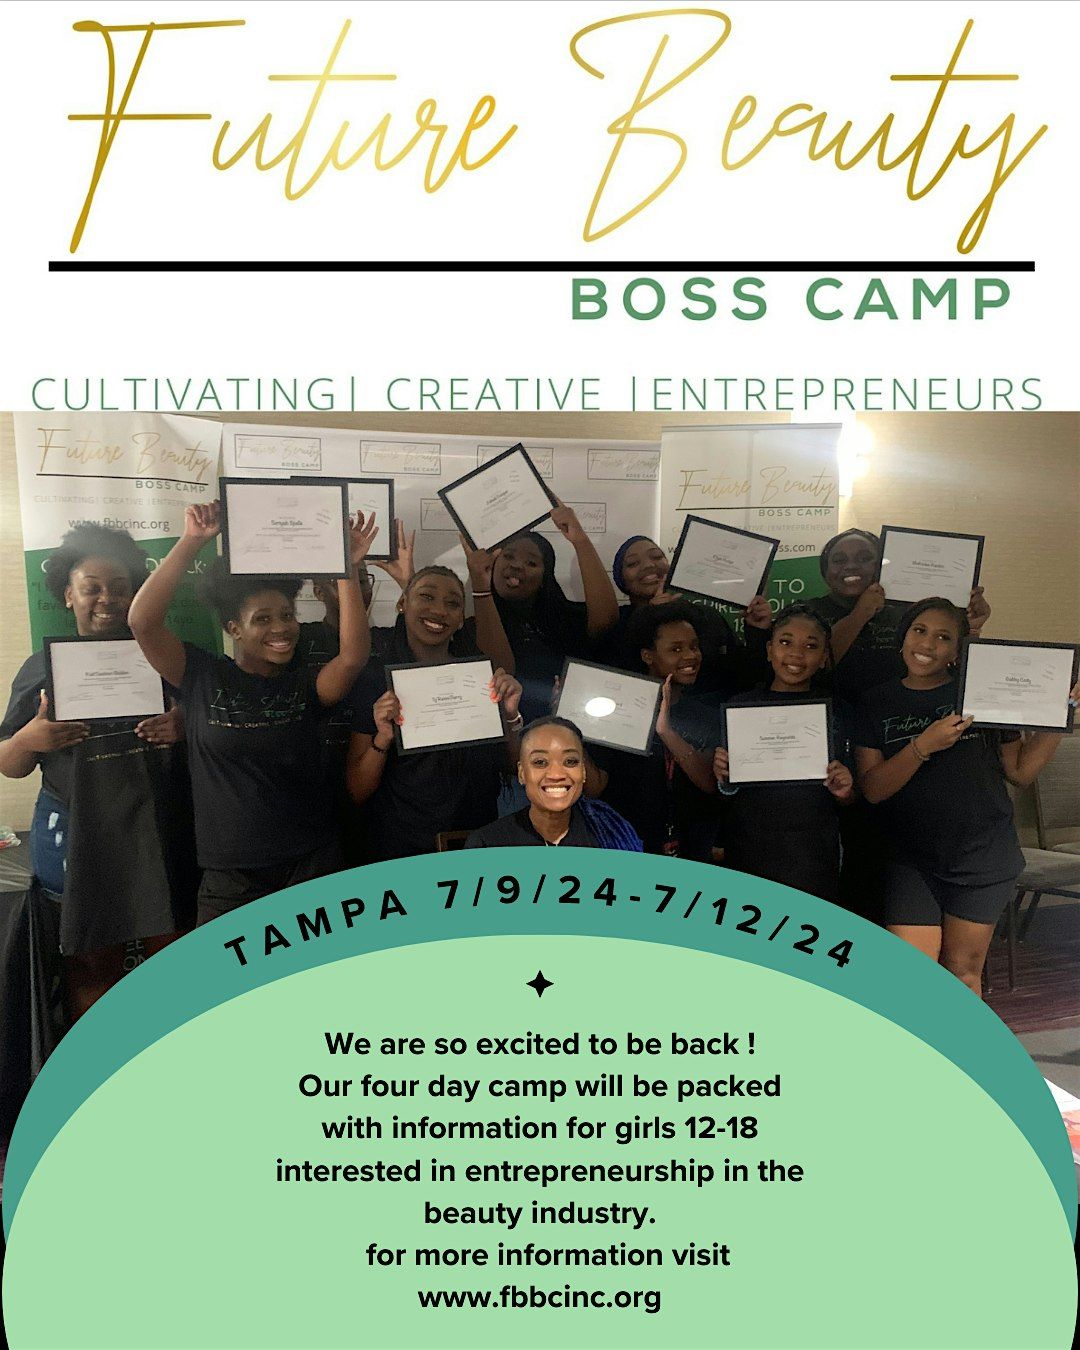 Tampa Future Beauty Boss Camp July 9th-July 12th